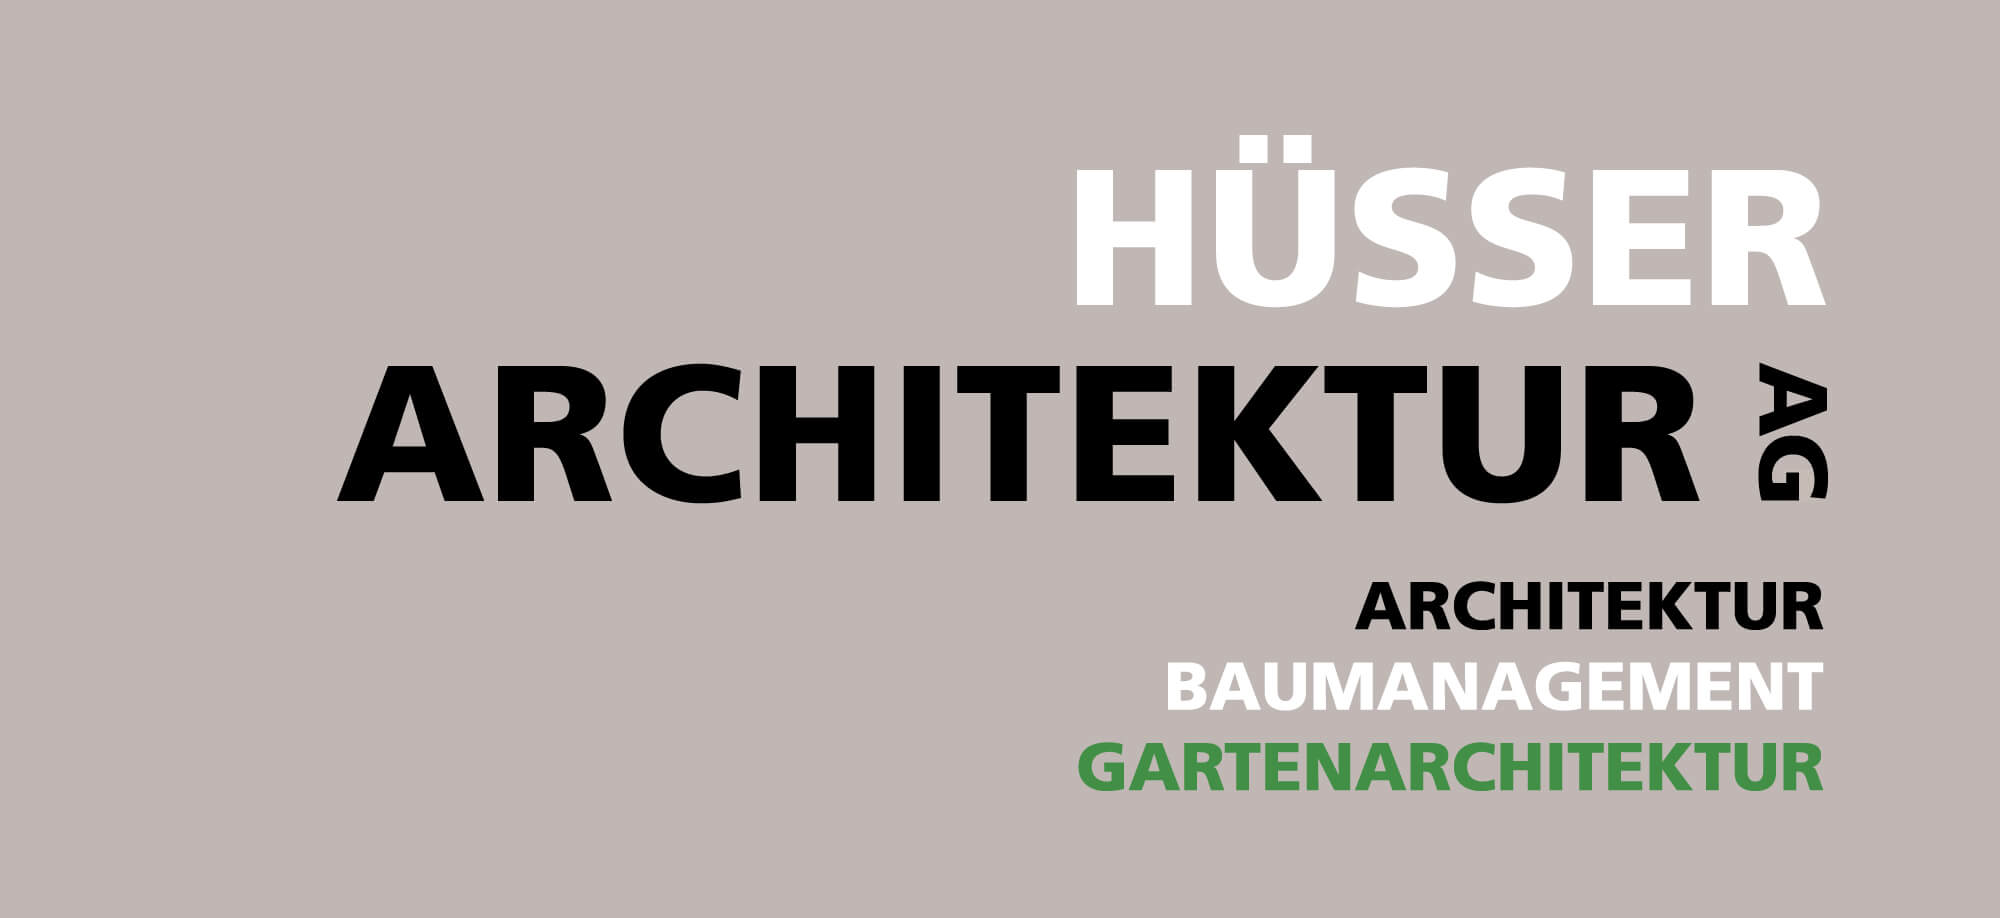 Hüsser Architektur AG